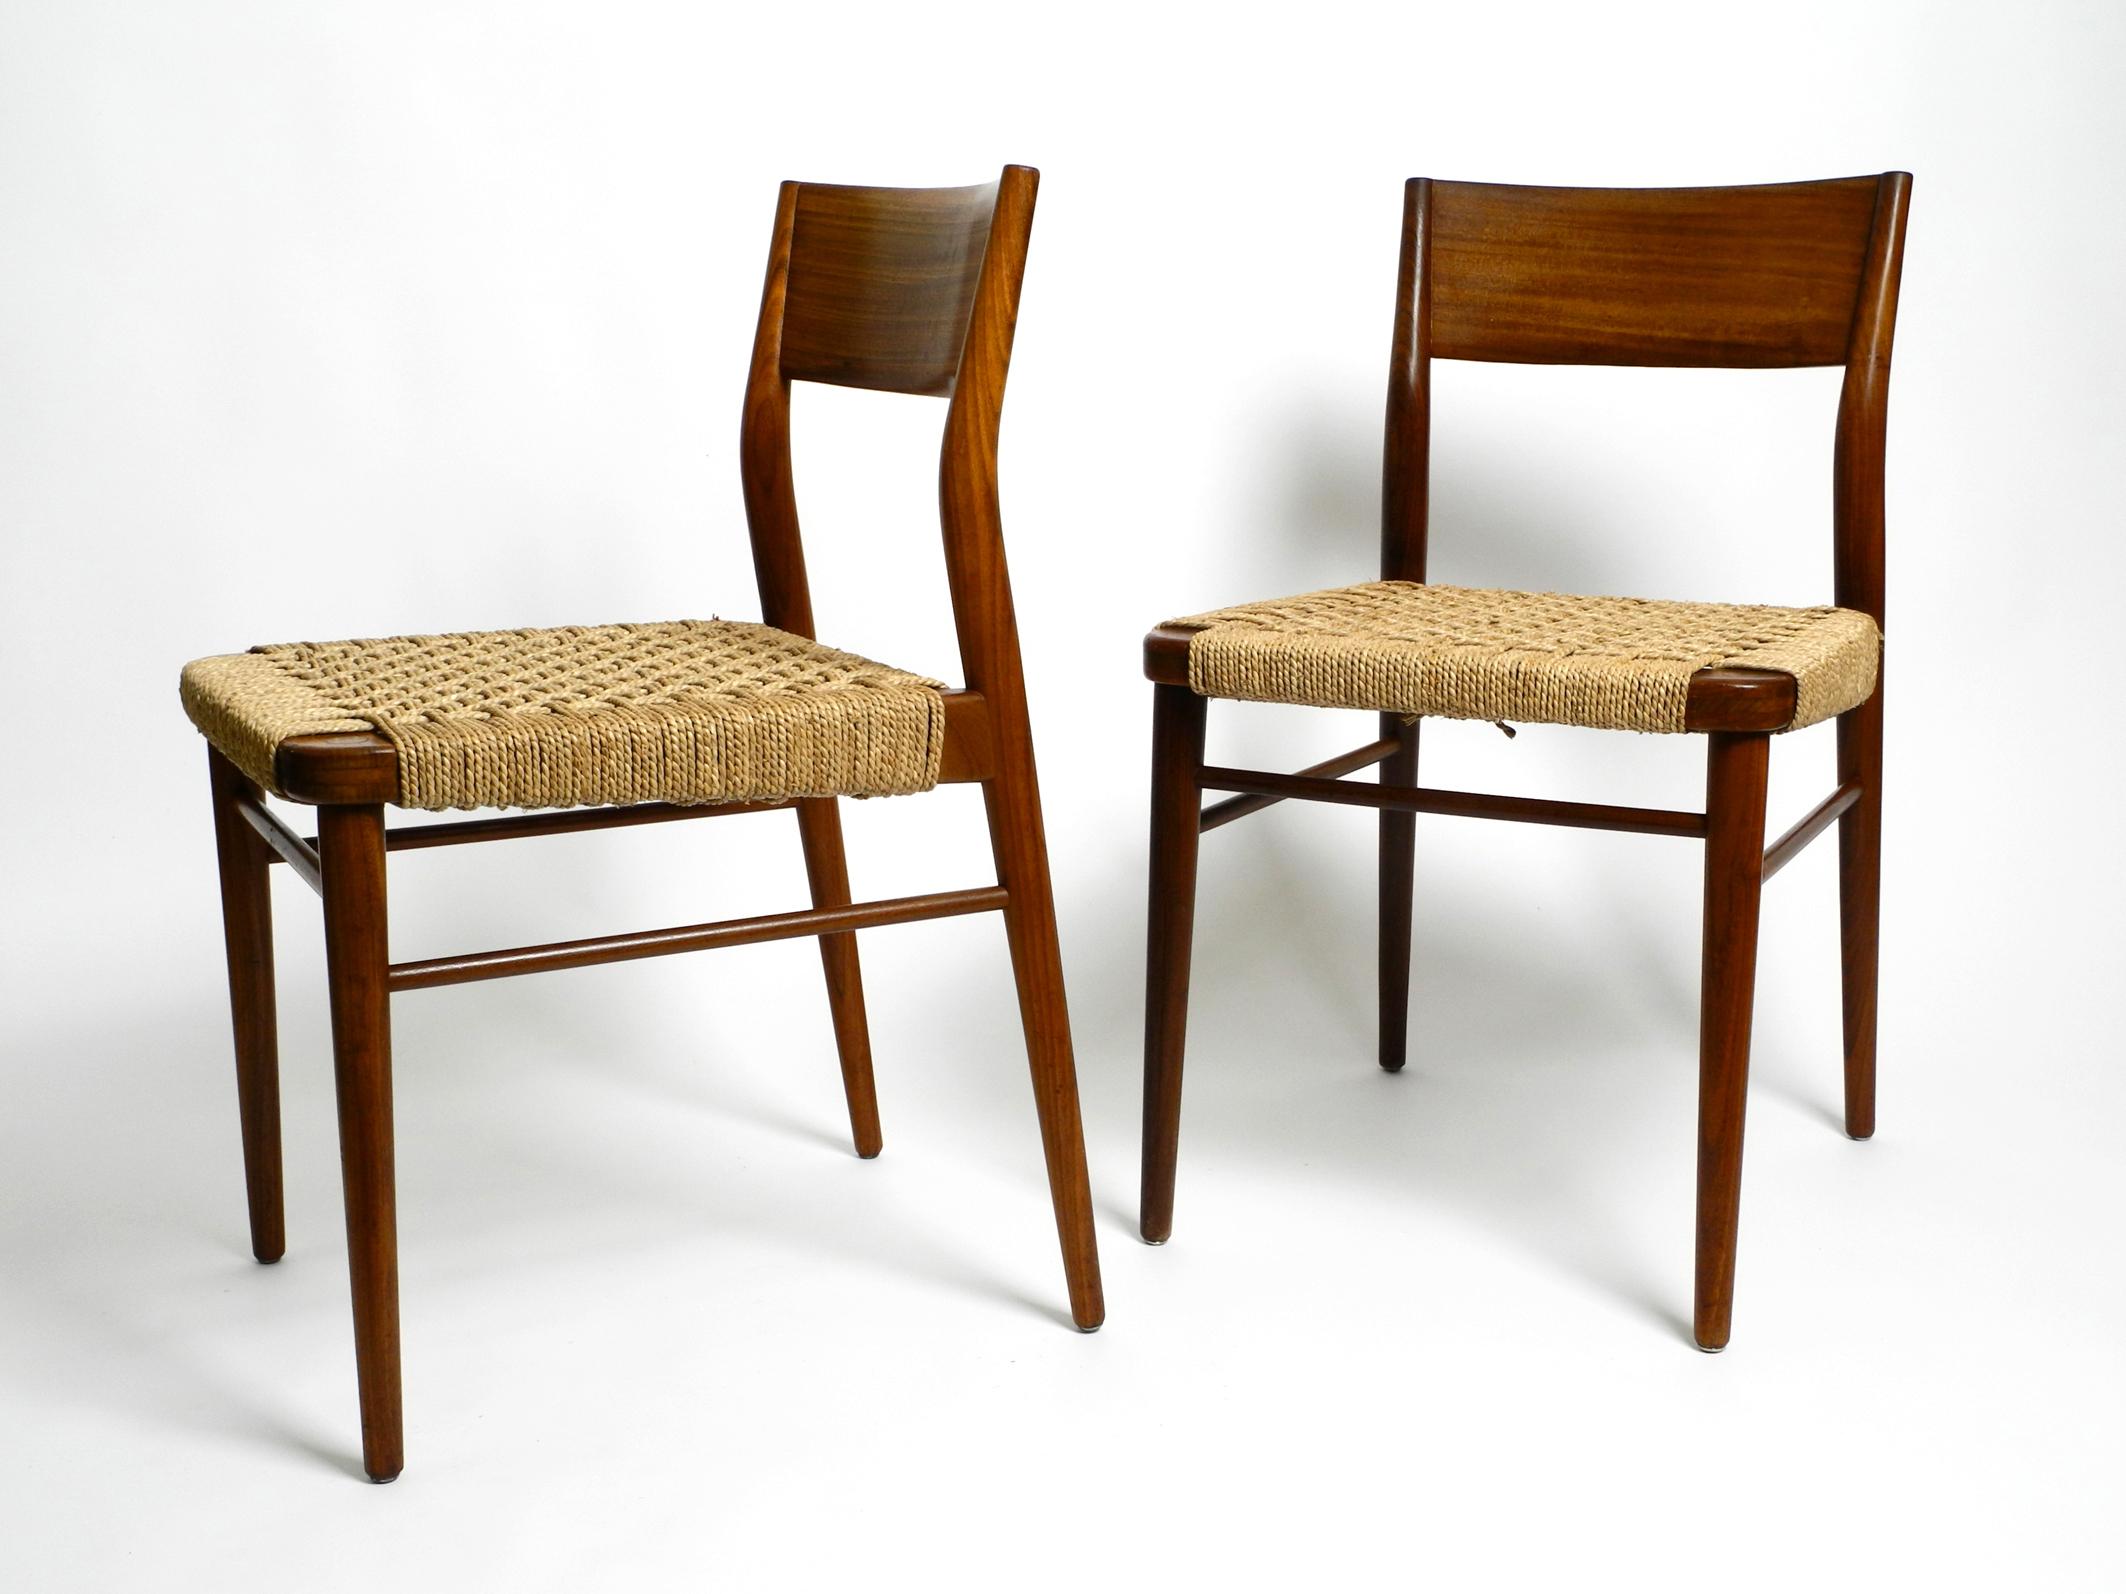 Deux chaises de salle à manger originales des années 1960 en bois de noyer et sièges en corde de jonc tressée.
Fabriqué par Wilkhahn, Modell 351. Conçu par Georg Leowald. Fabriqué en Allemagne.
Magnifique design minimaliste en très bon état